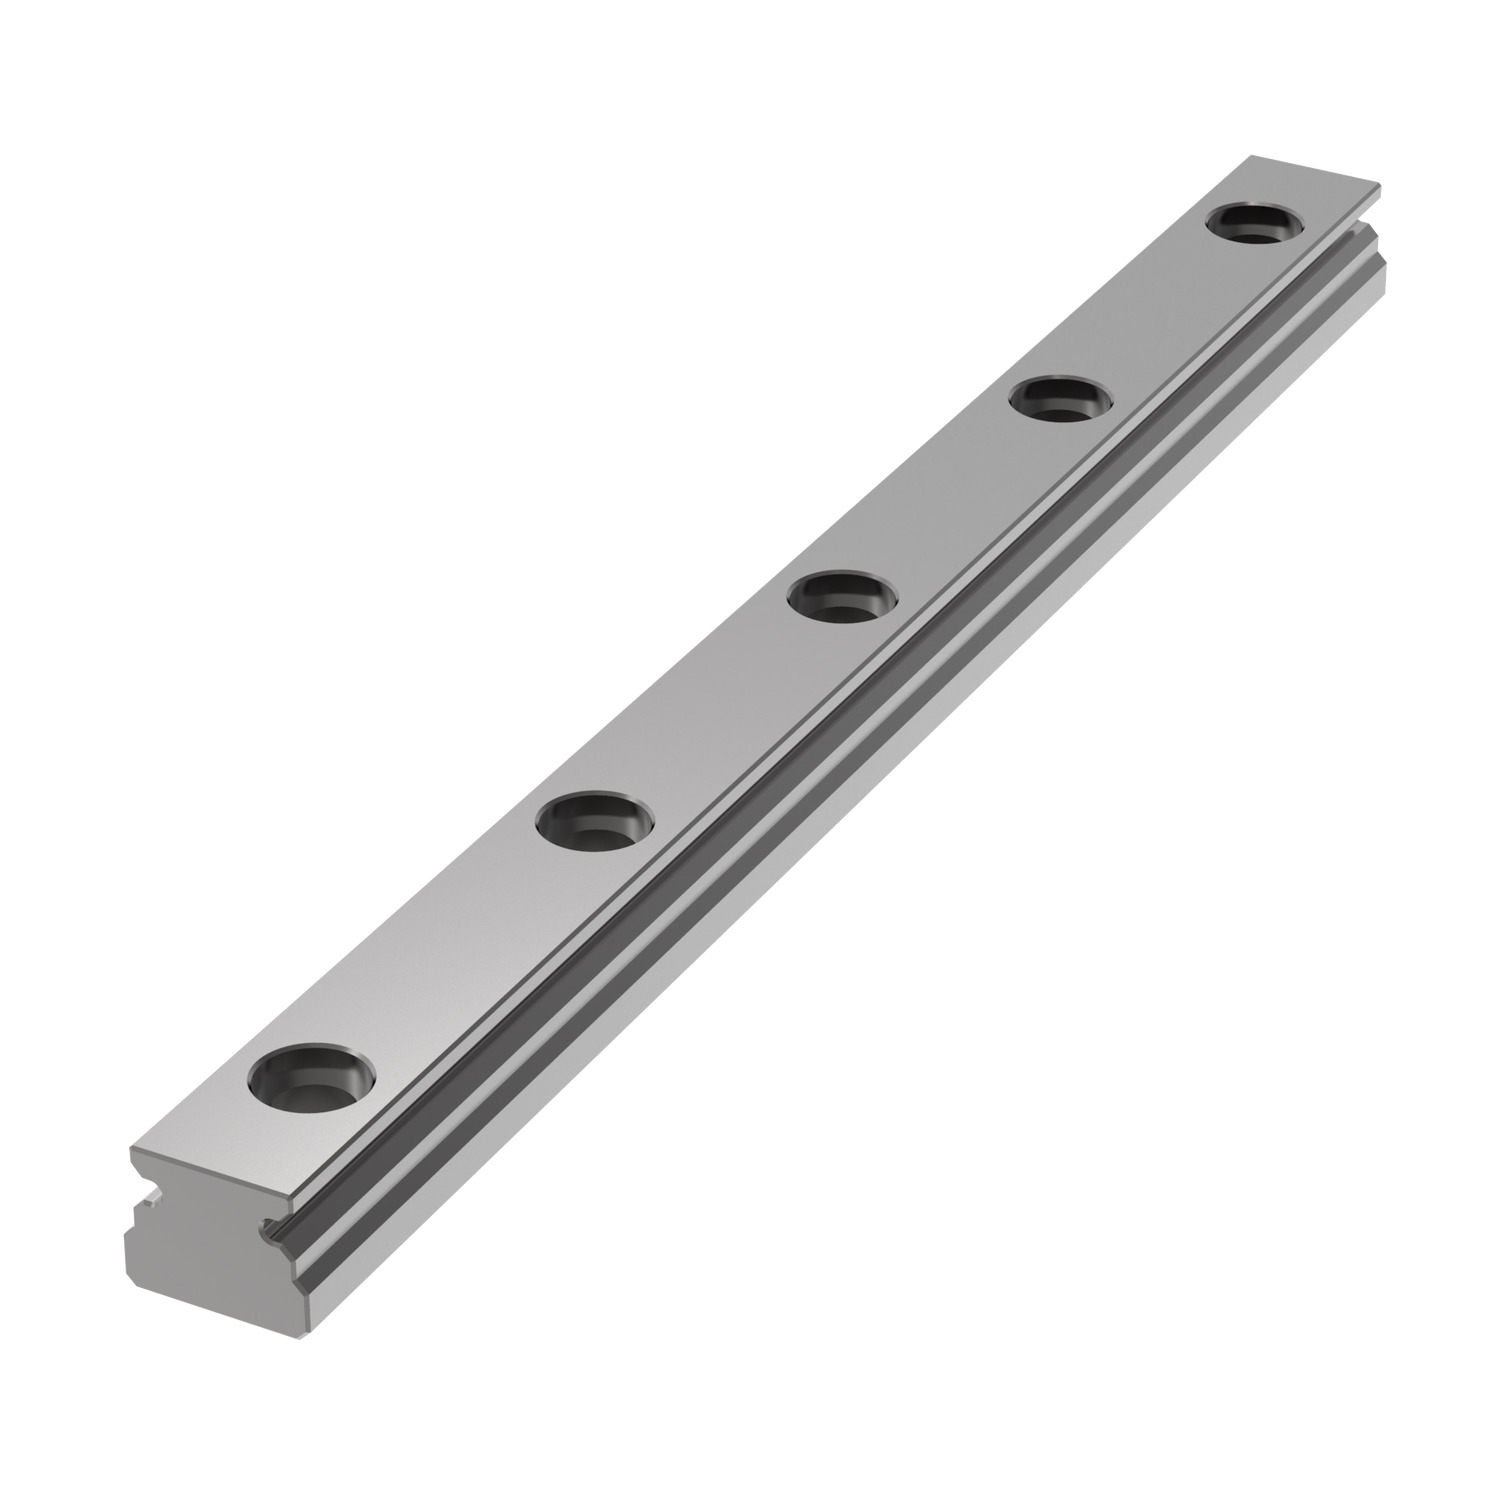 Product L1010.03, 3mm Miniature Linear Rail standard width / 